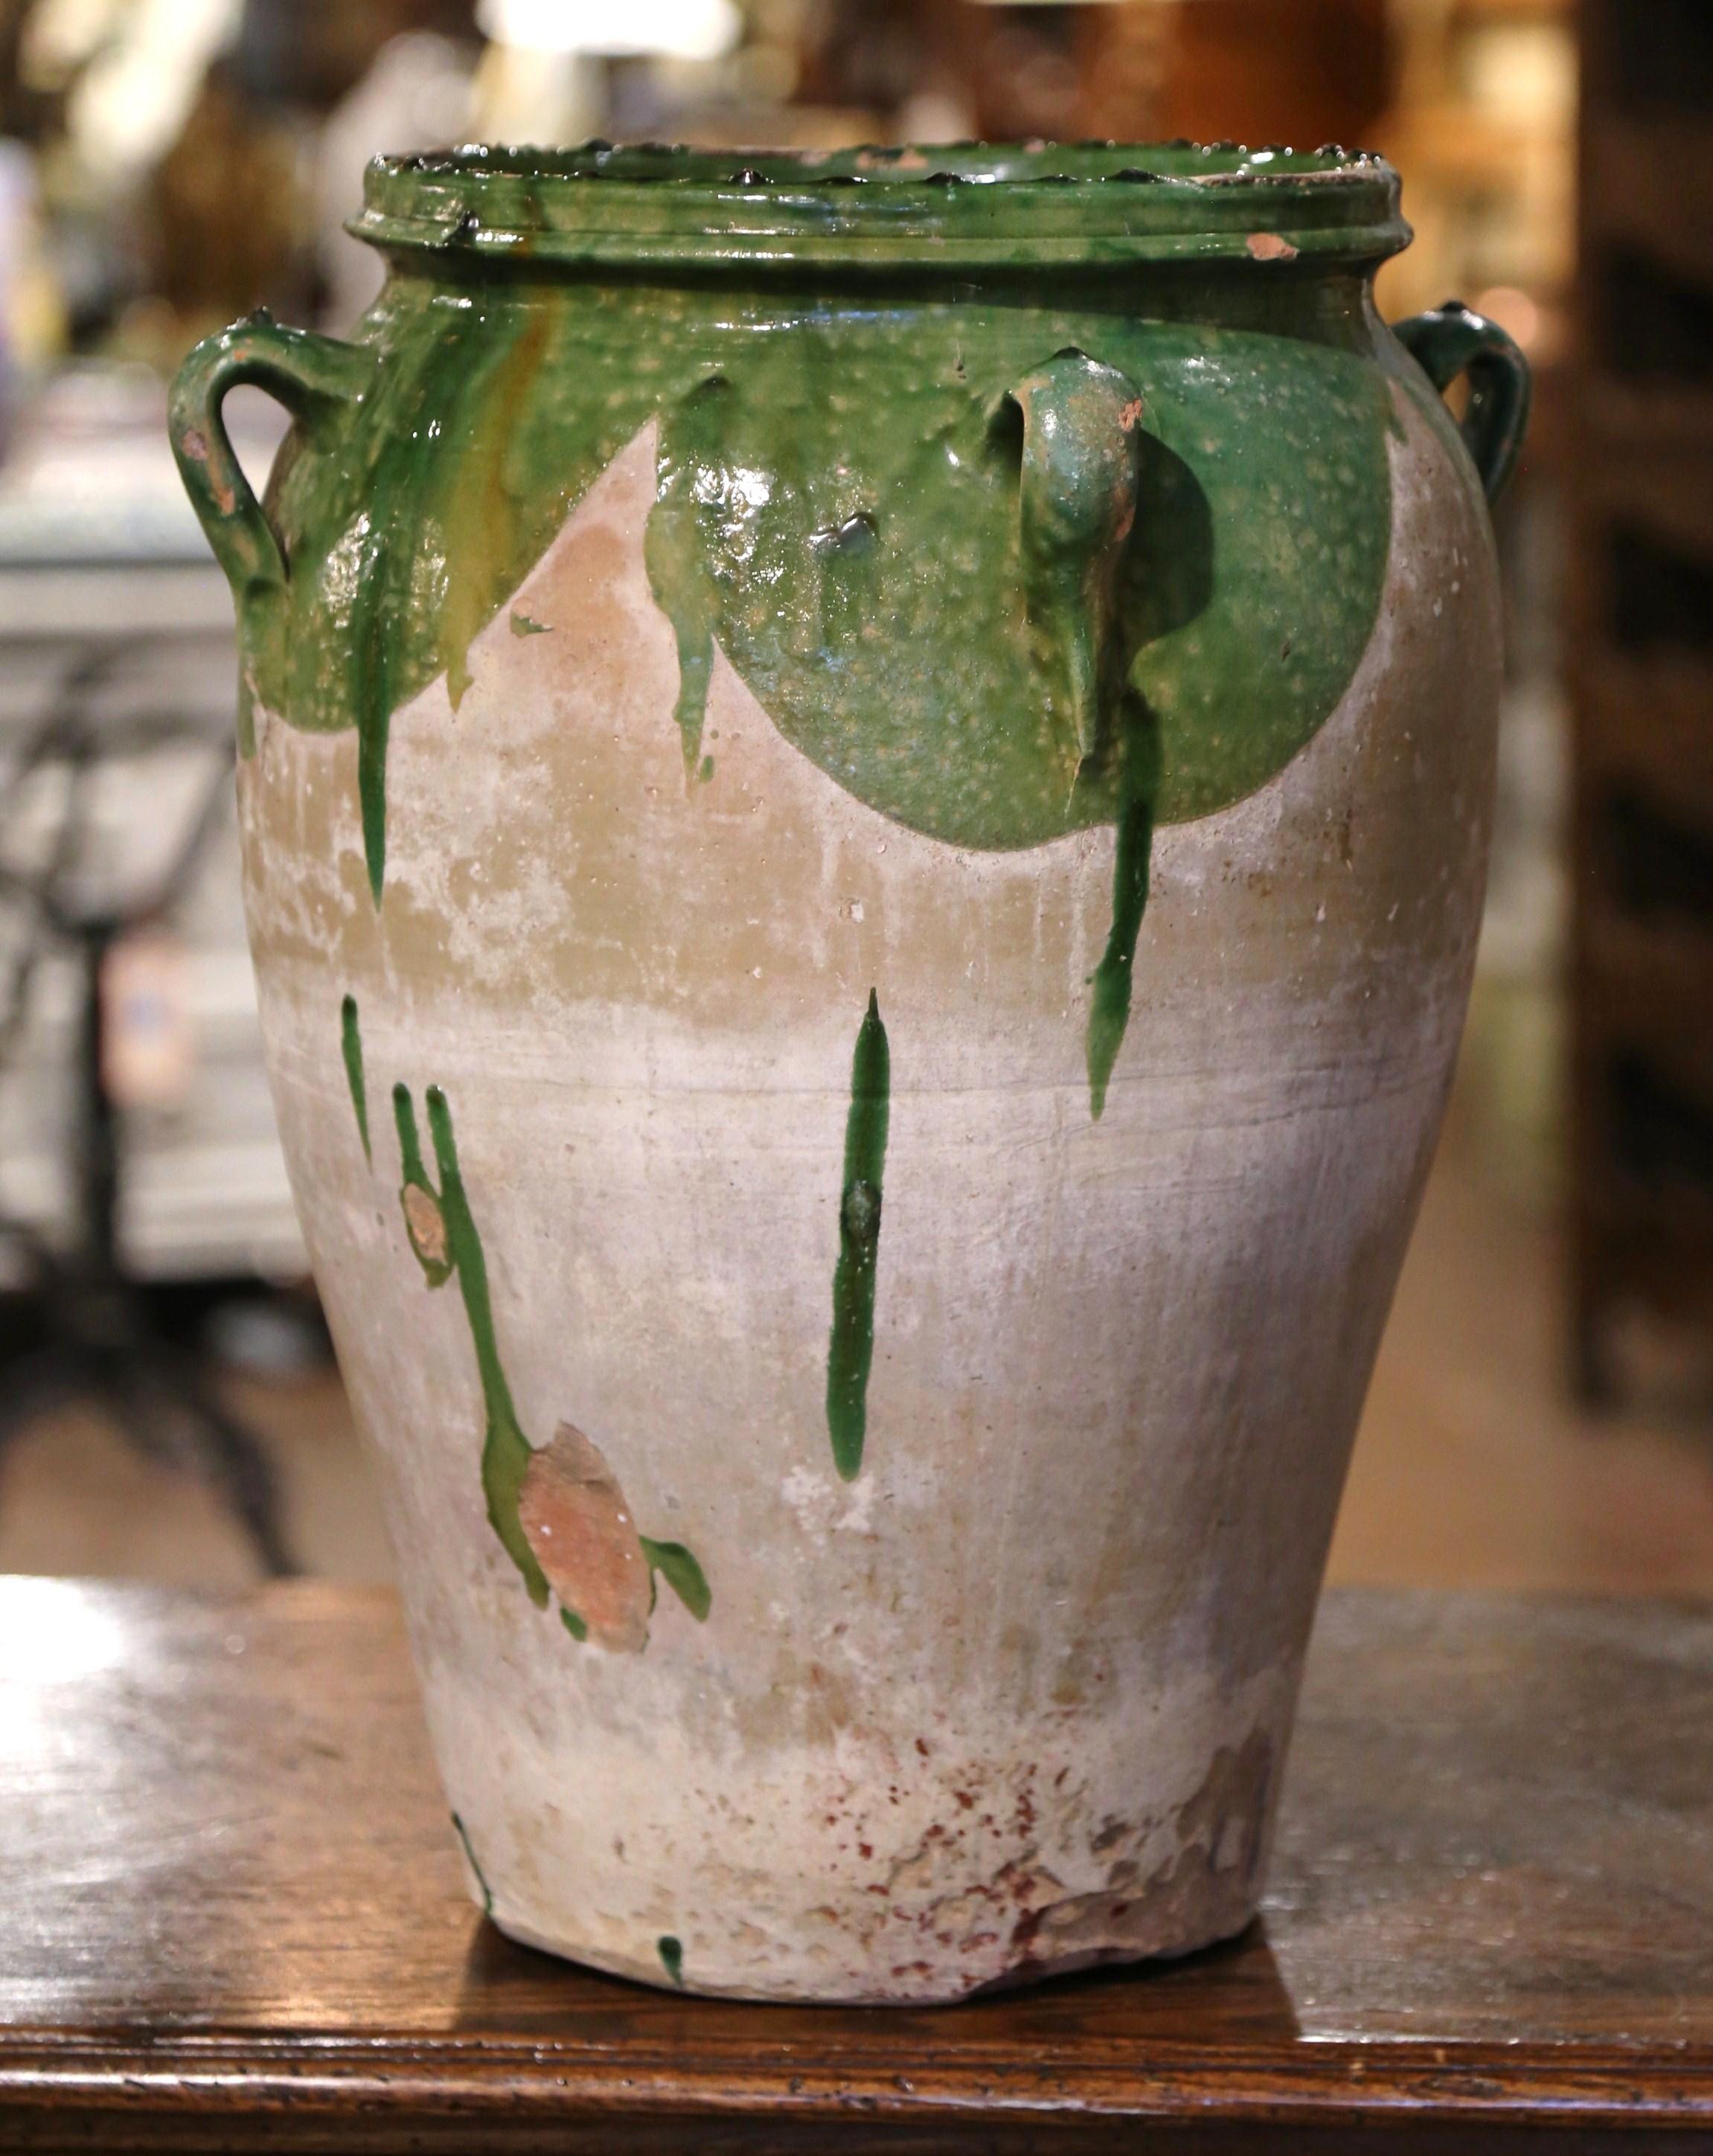 Cette ancienne jarre à olives en faïence a été créée dans le sud de la France, vers 1780. Fabriqué en argile blonde et de couleur neutre, le vase en terre cuite a une forme traditionnelle ronde et bulbeuse ; il est en outre habillé de quatre anses à